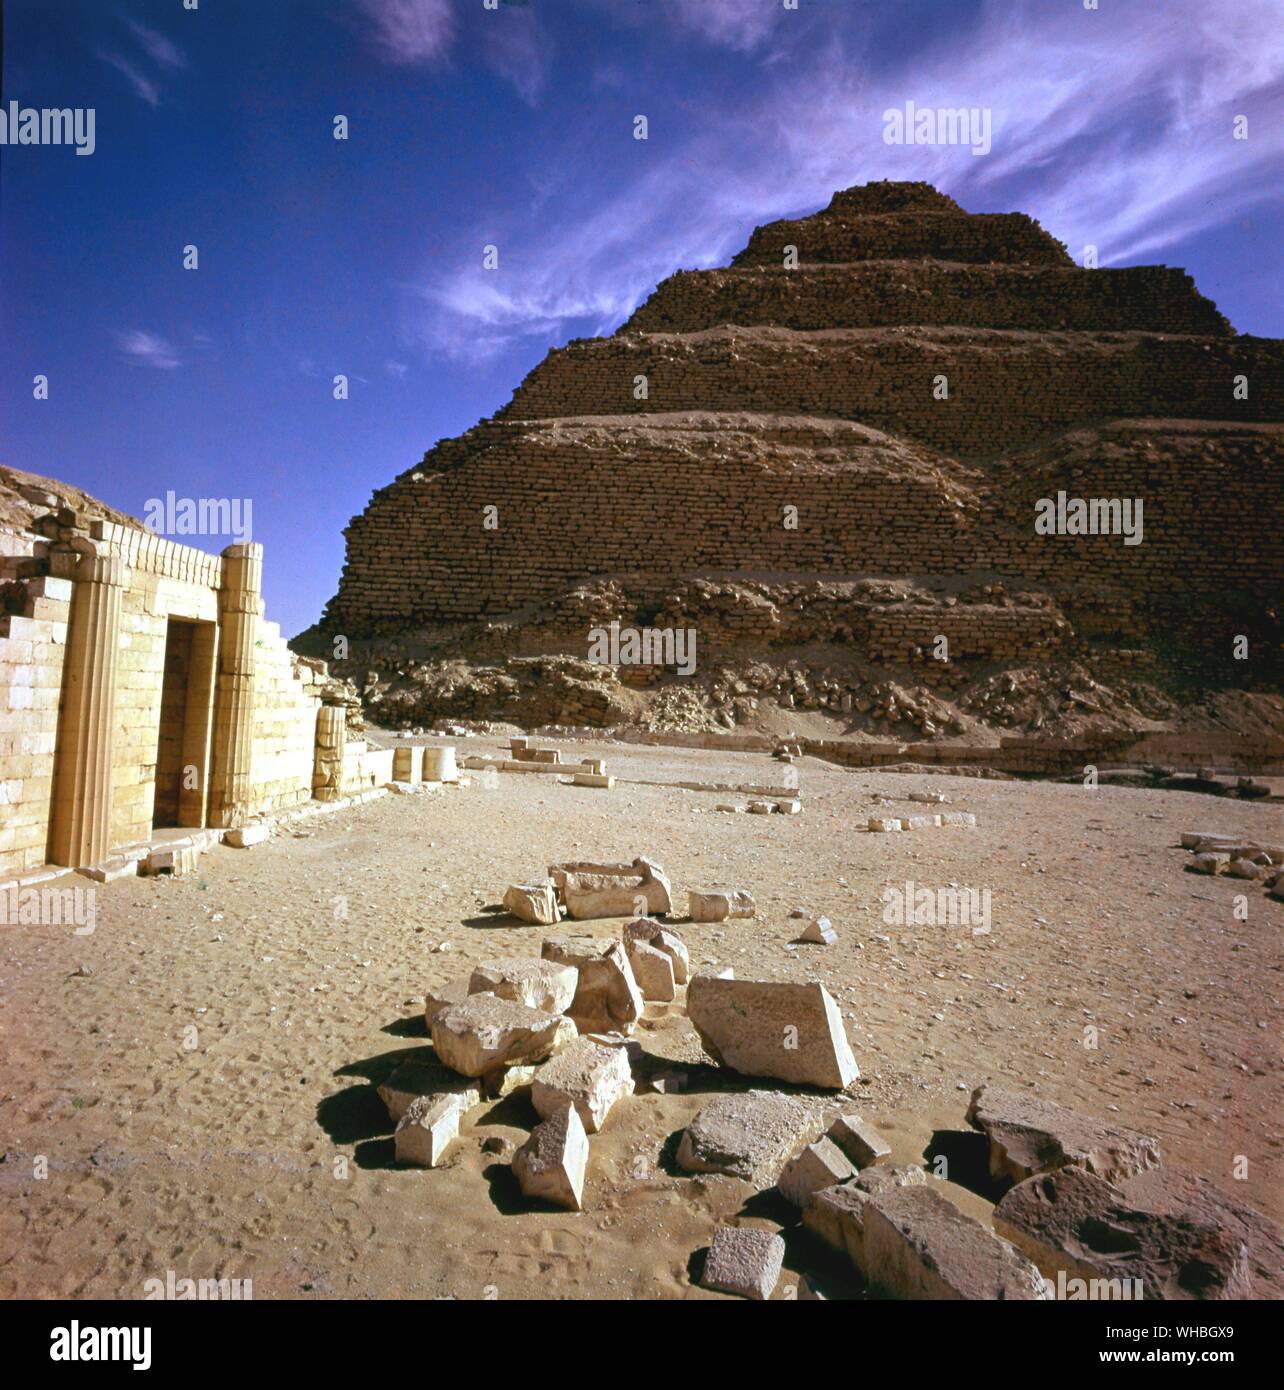 Saqqara - passo pyramid - Saqqara, Sakkara, Saqqarah è un vasto, antica terra di sepoltura in Egitto, dotata del più antico del mondo fase permanente piramide (29.871264° N 31.216381° E). È situato a circa 30 km a sud di moderno-giorno Cairo e copre un area di circa 7 km da 1,5 km.. Foto Stock